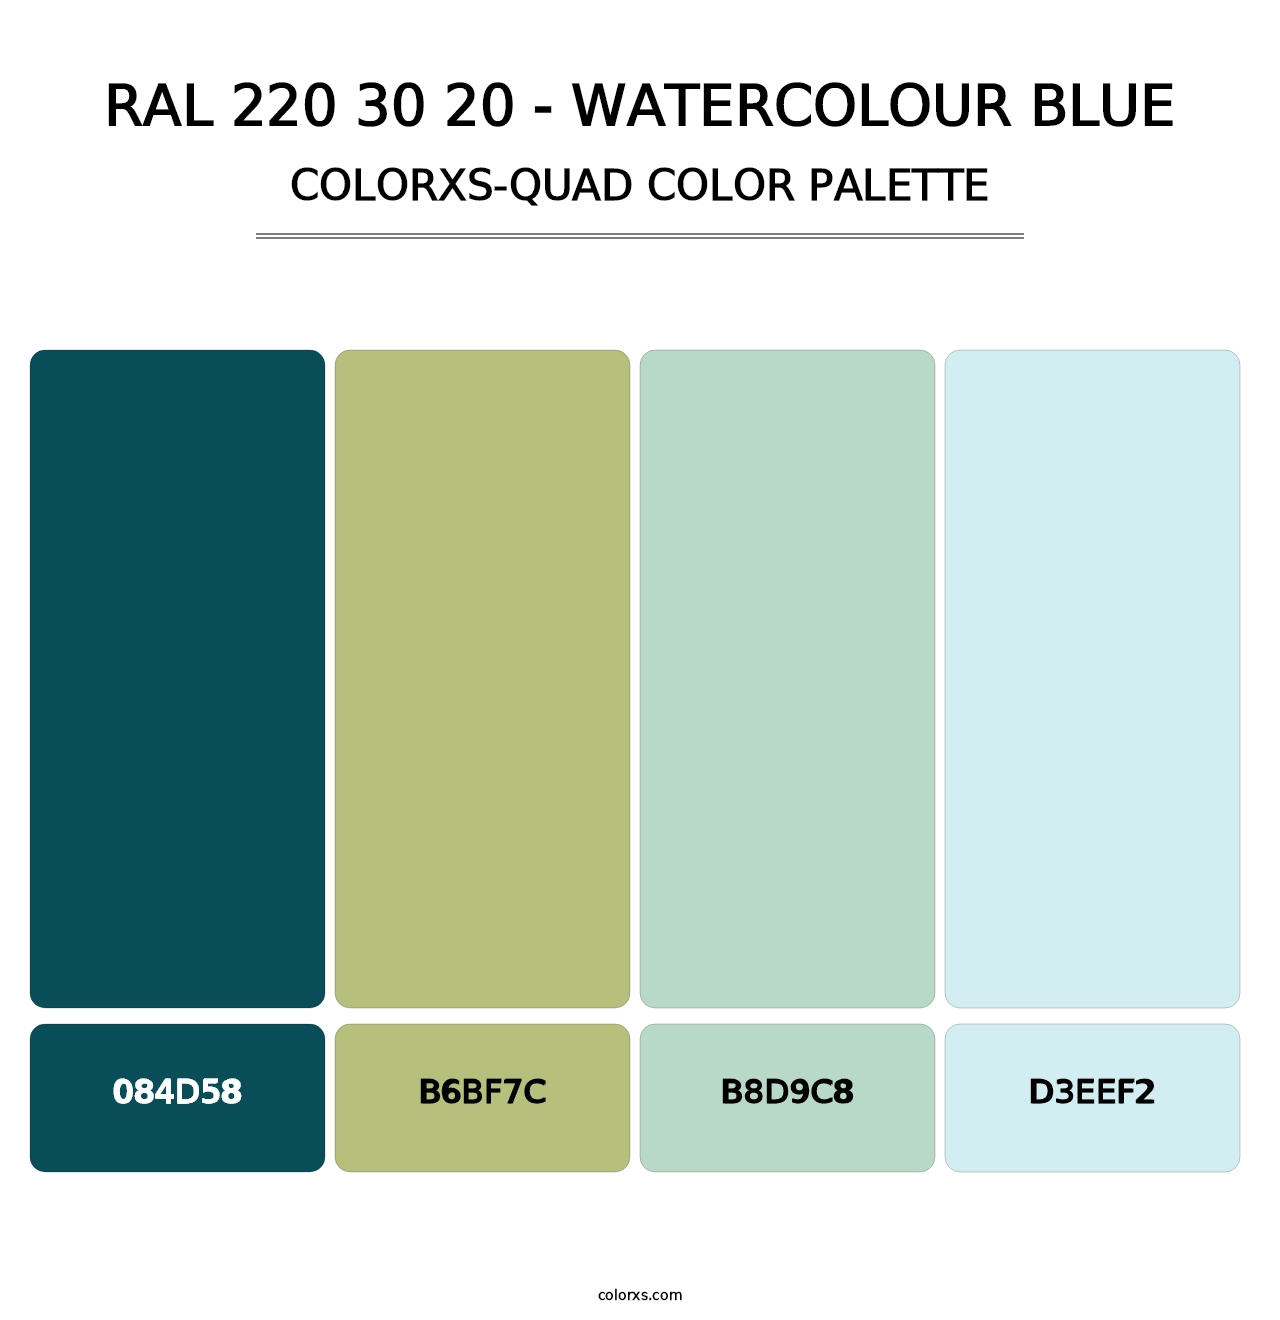 RAL 220 30 20 - Watercolour Blue - Colorxs Quad Palette